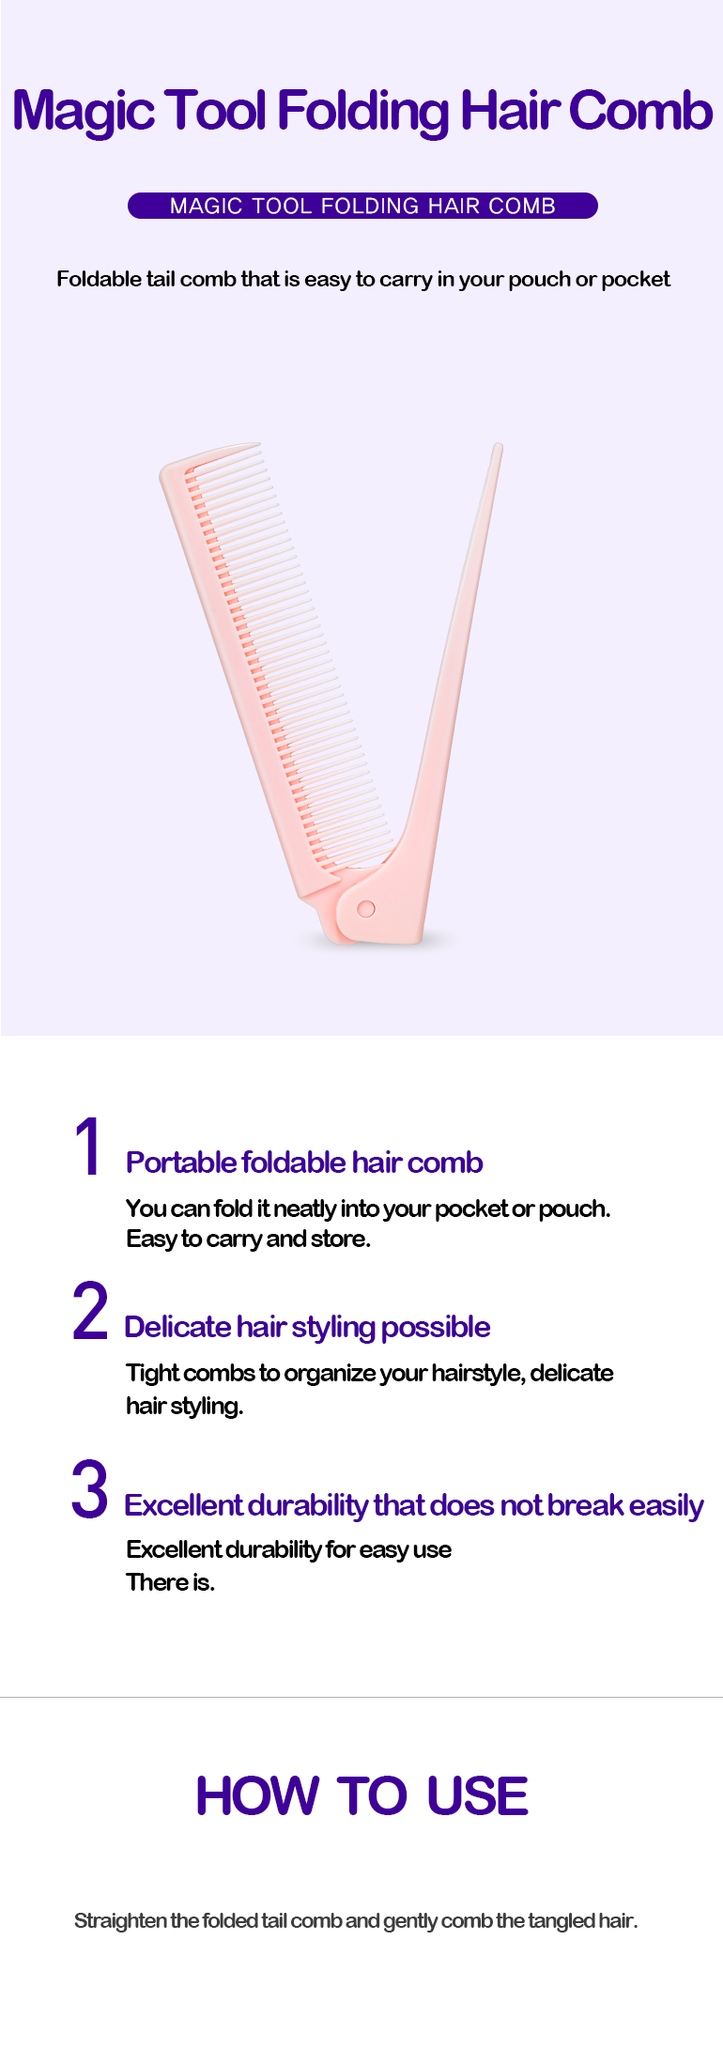 Sisir Lipat | Magic Tool Folding Hair Comb